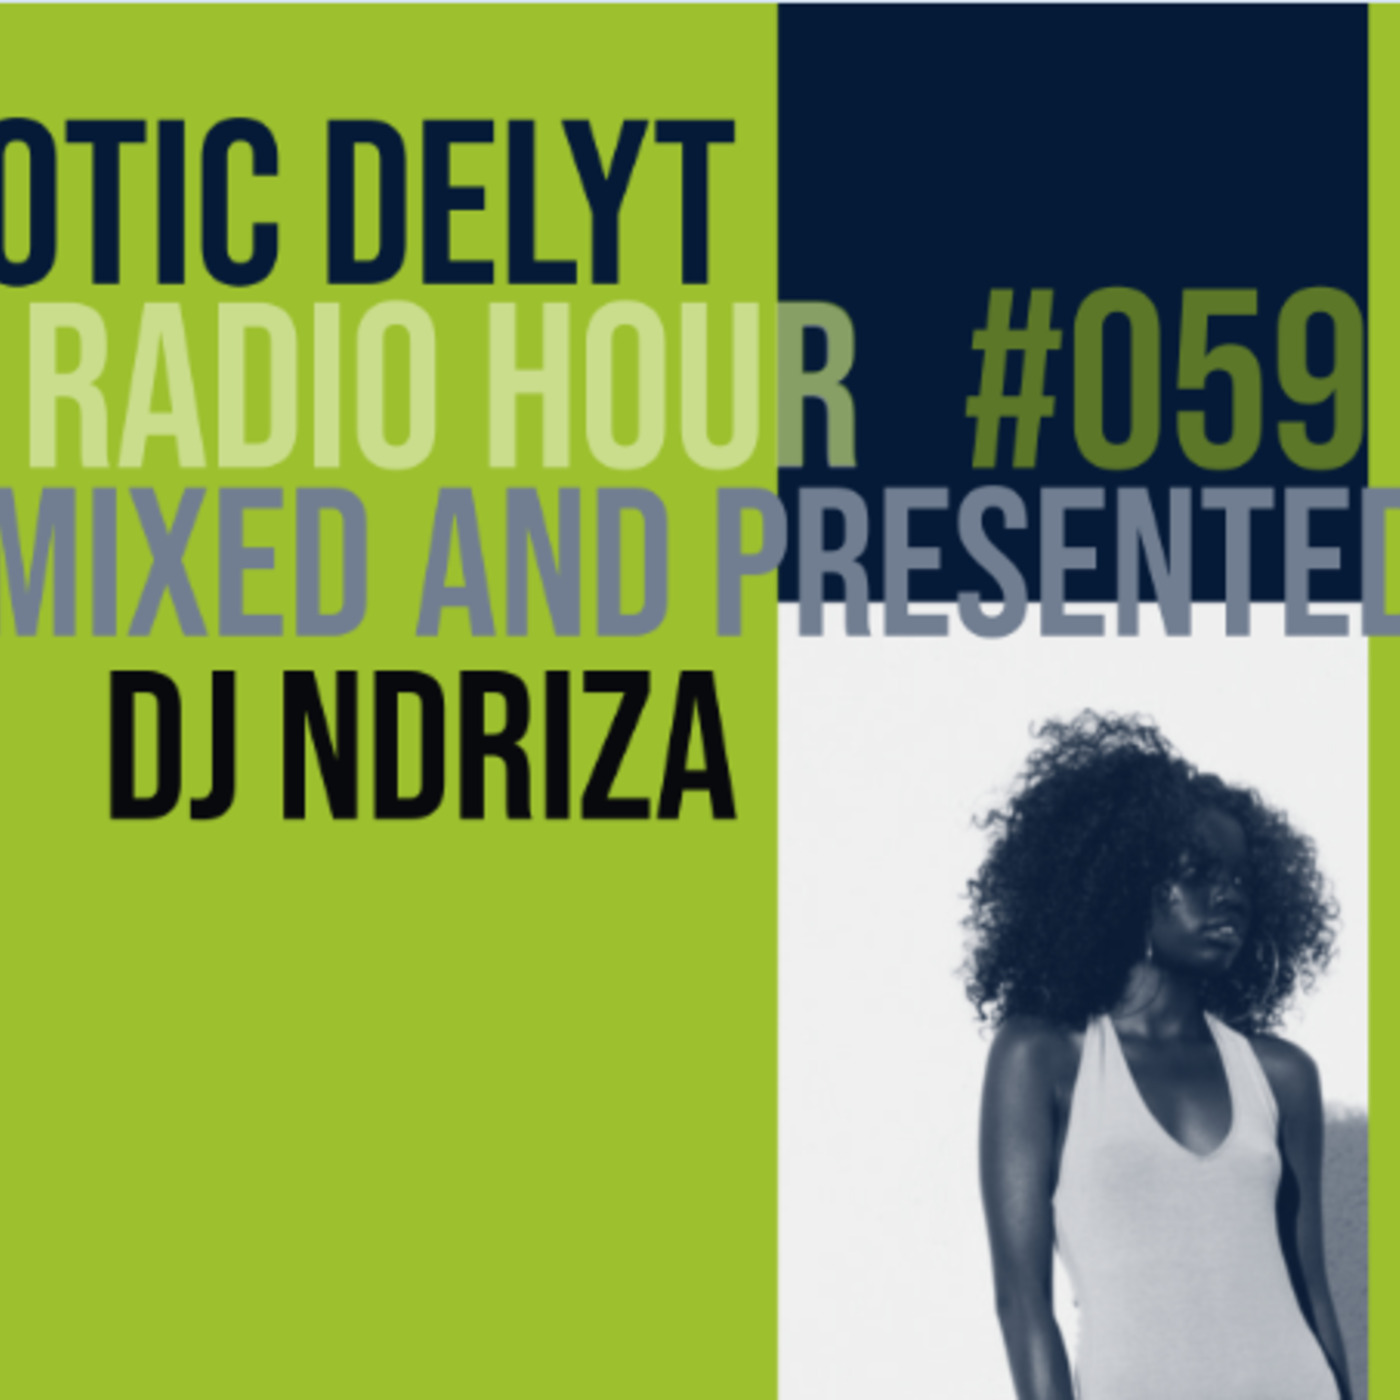 Otic Delyt Radio Hour #059 x Ndriza